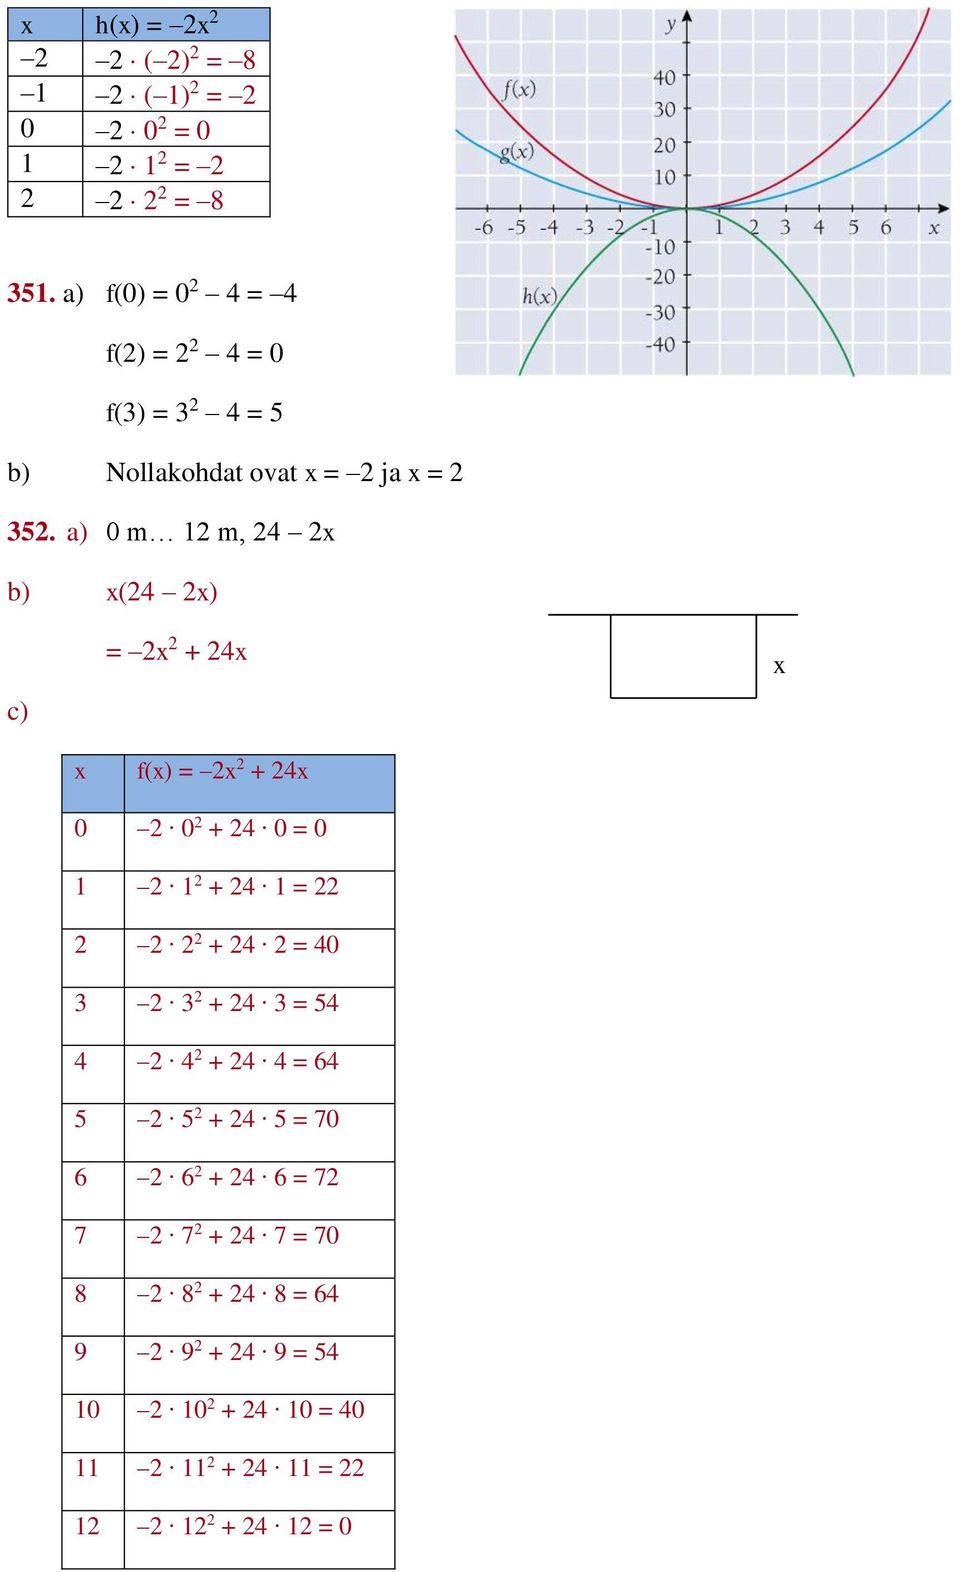 a) 0 m m, x b) x( x) c) = x + x x x f(x) = x + x 0 0 + 0 = 0 + = + =